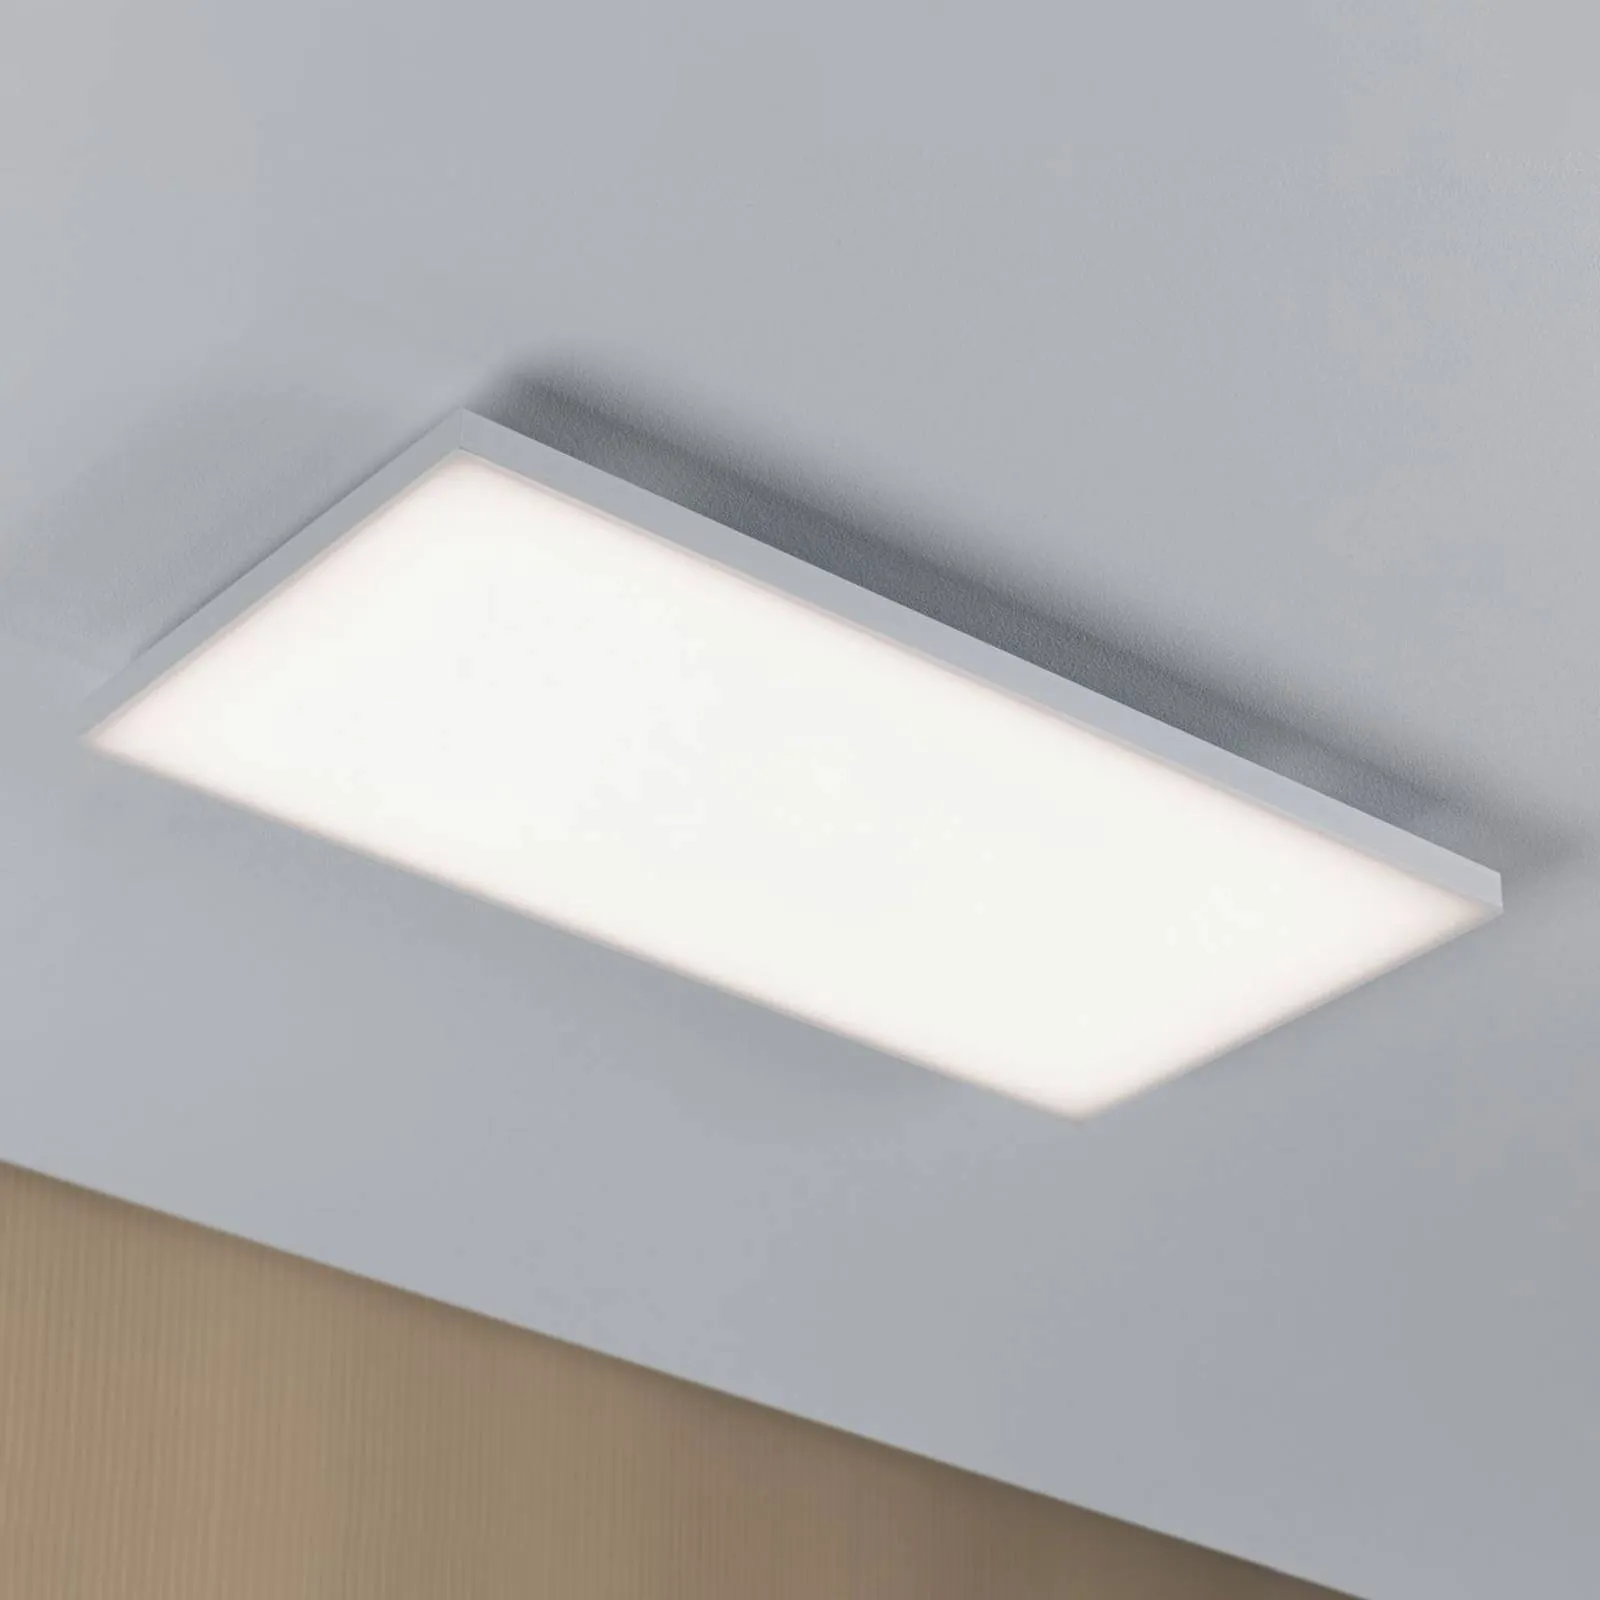 Paulmann Velora LED ceiling light 59.5 x 29.5 cm